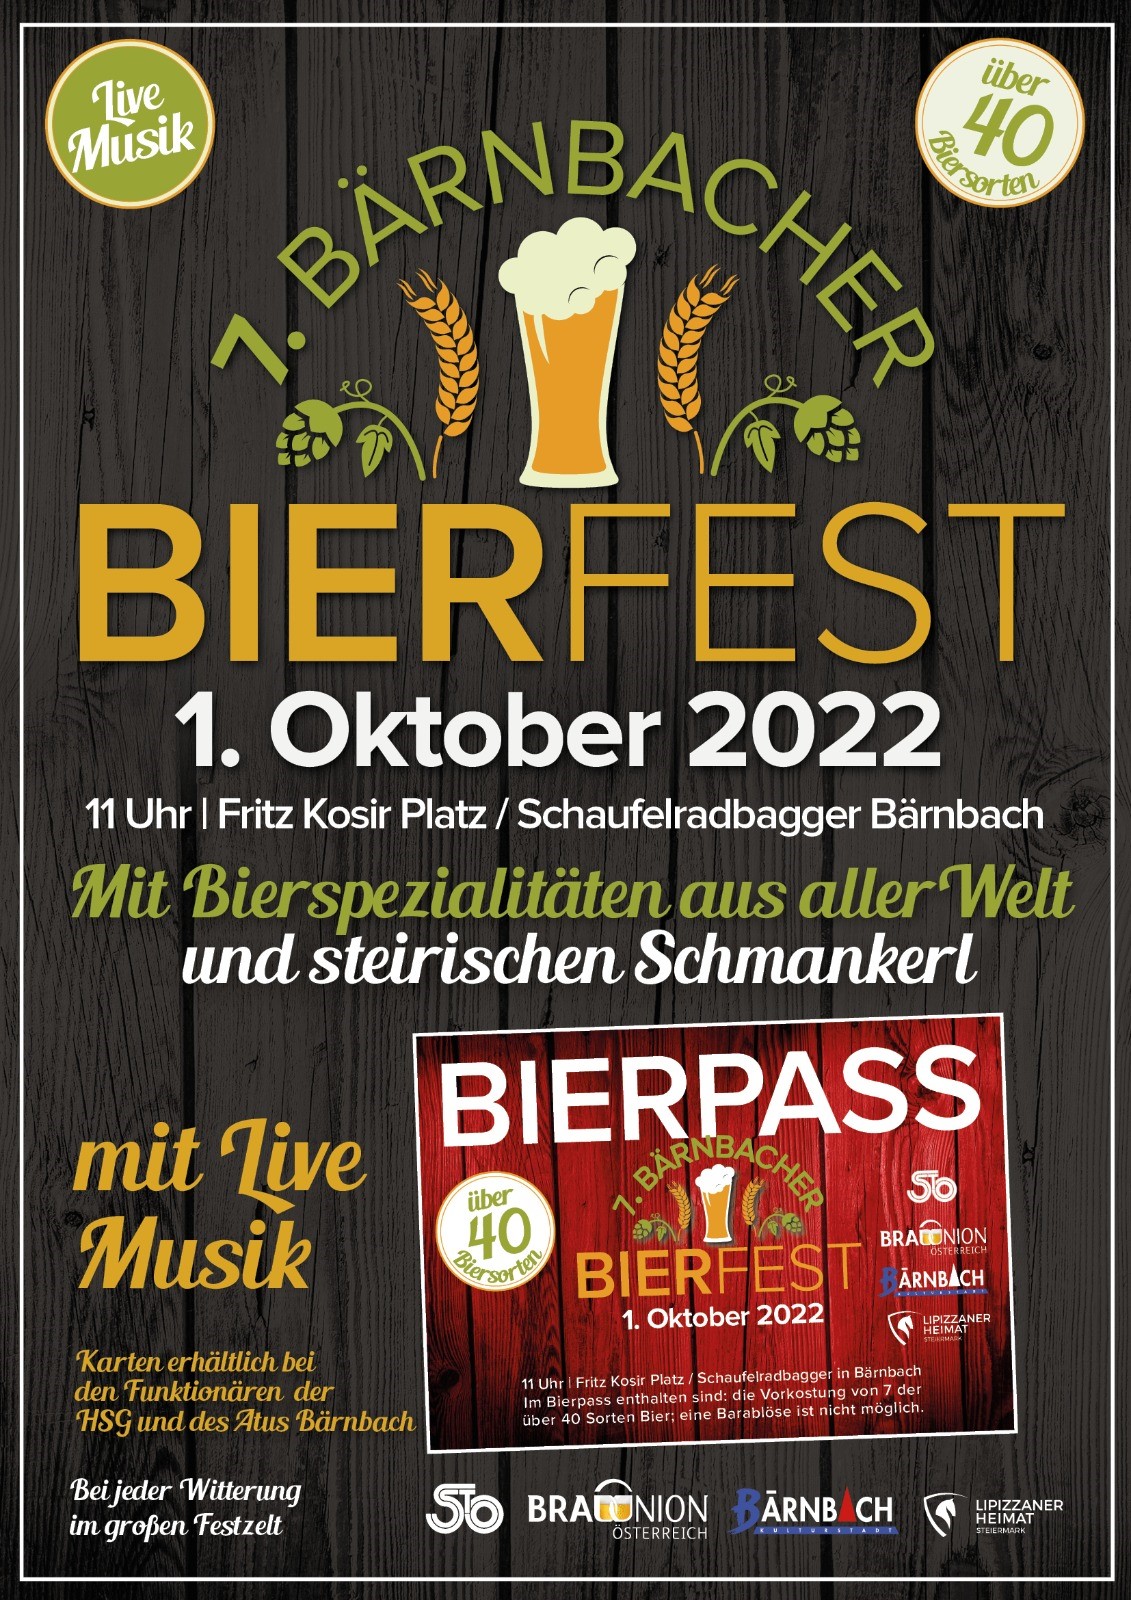 Bierfest 2022